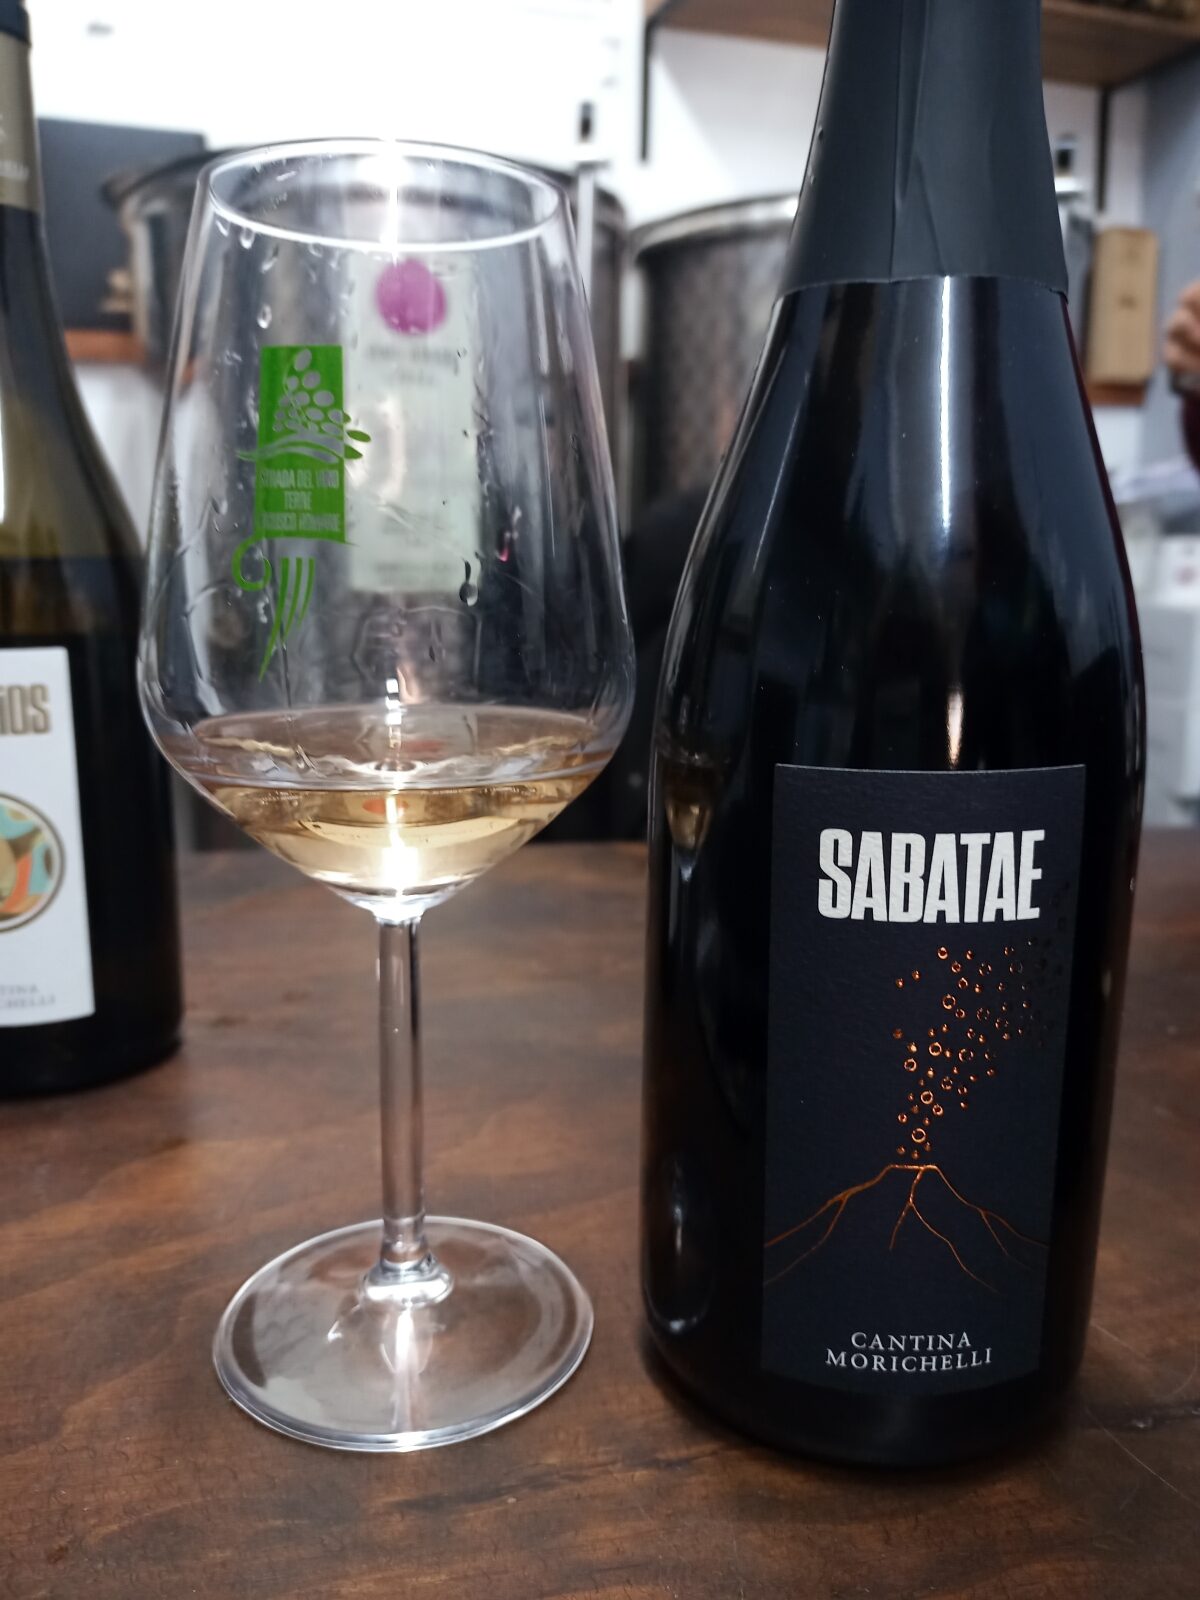 Sabatae Metodo Classico da Violone cantina Morichelli, foto di Partners in Wine